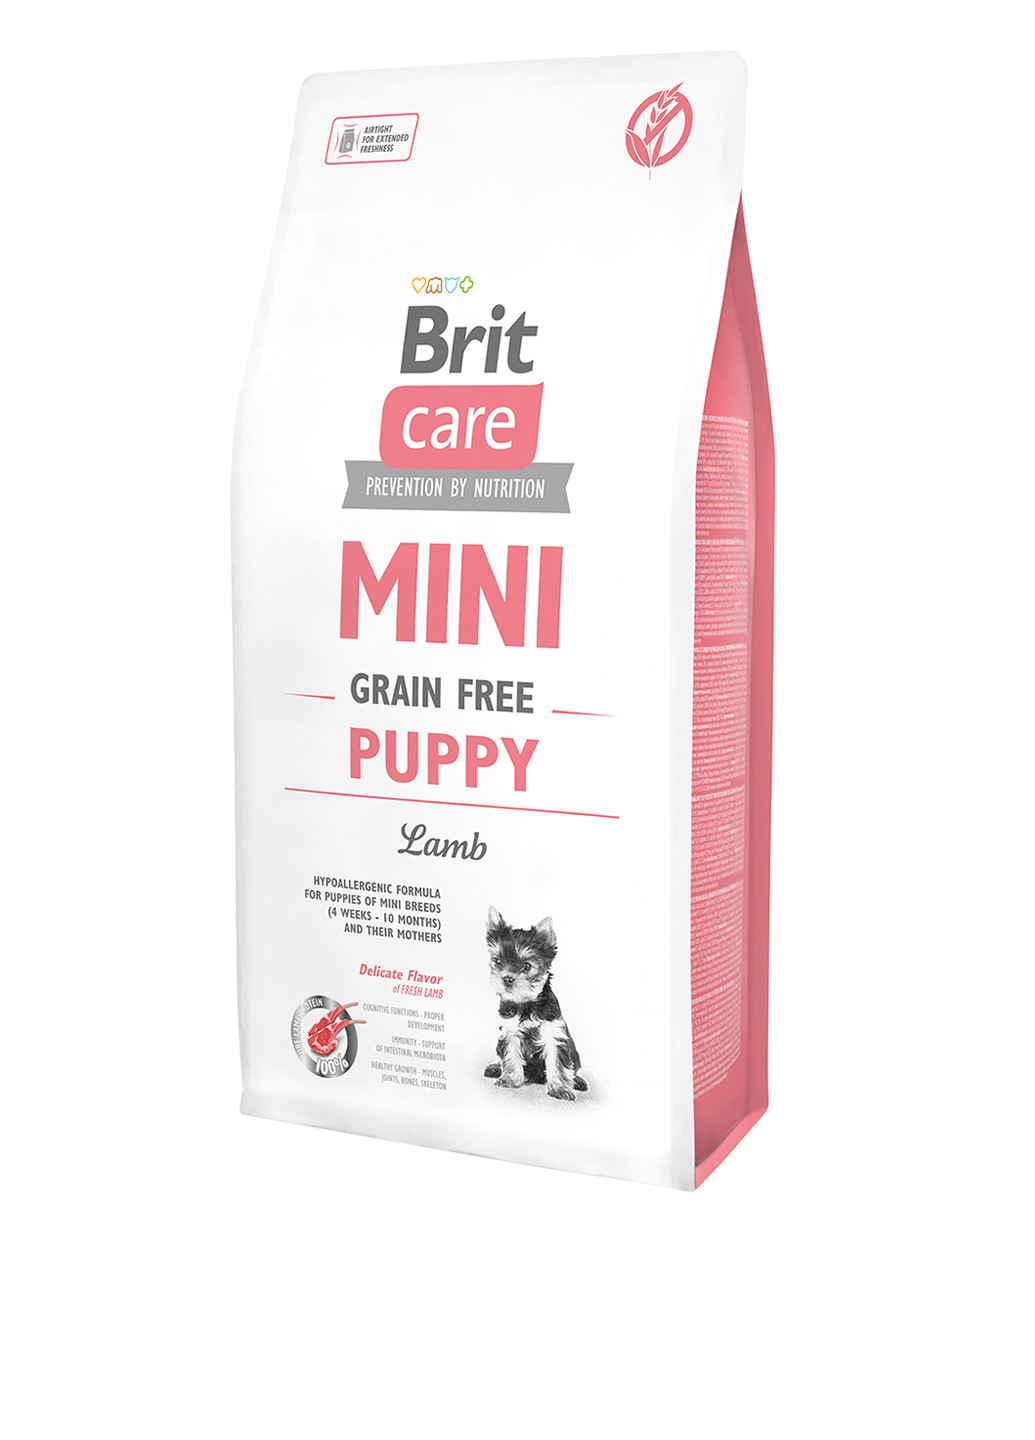 Сухой корм Care Mini Grain Free Puppy для щенков миниатюрных пород, 7 кг Brit Care (136945950)